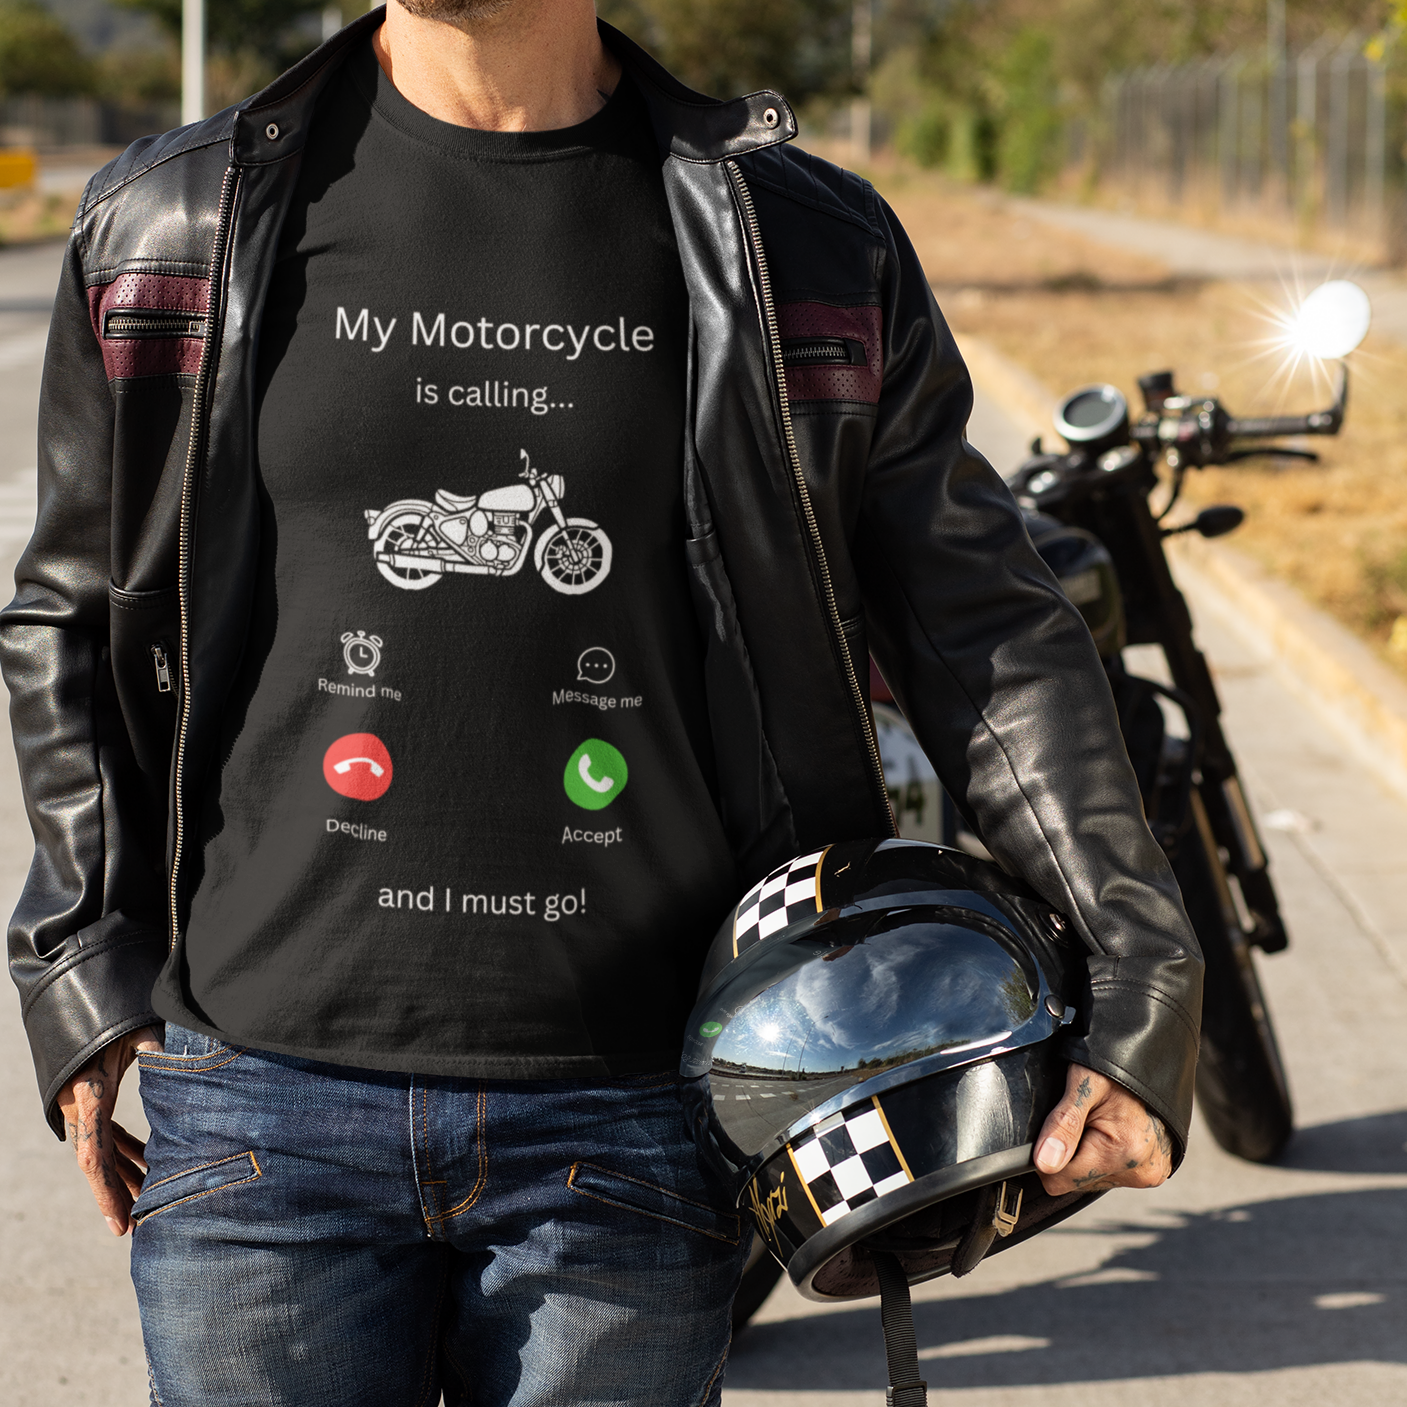 My Motorcycle is calling - Basic Shirt Unisex